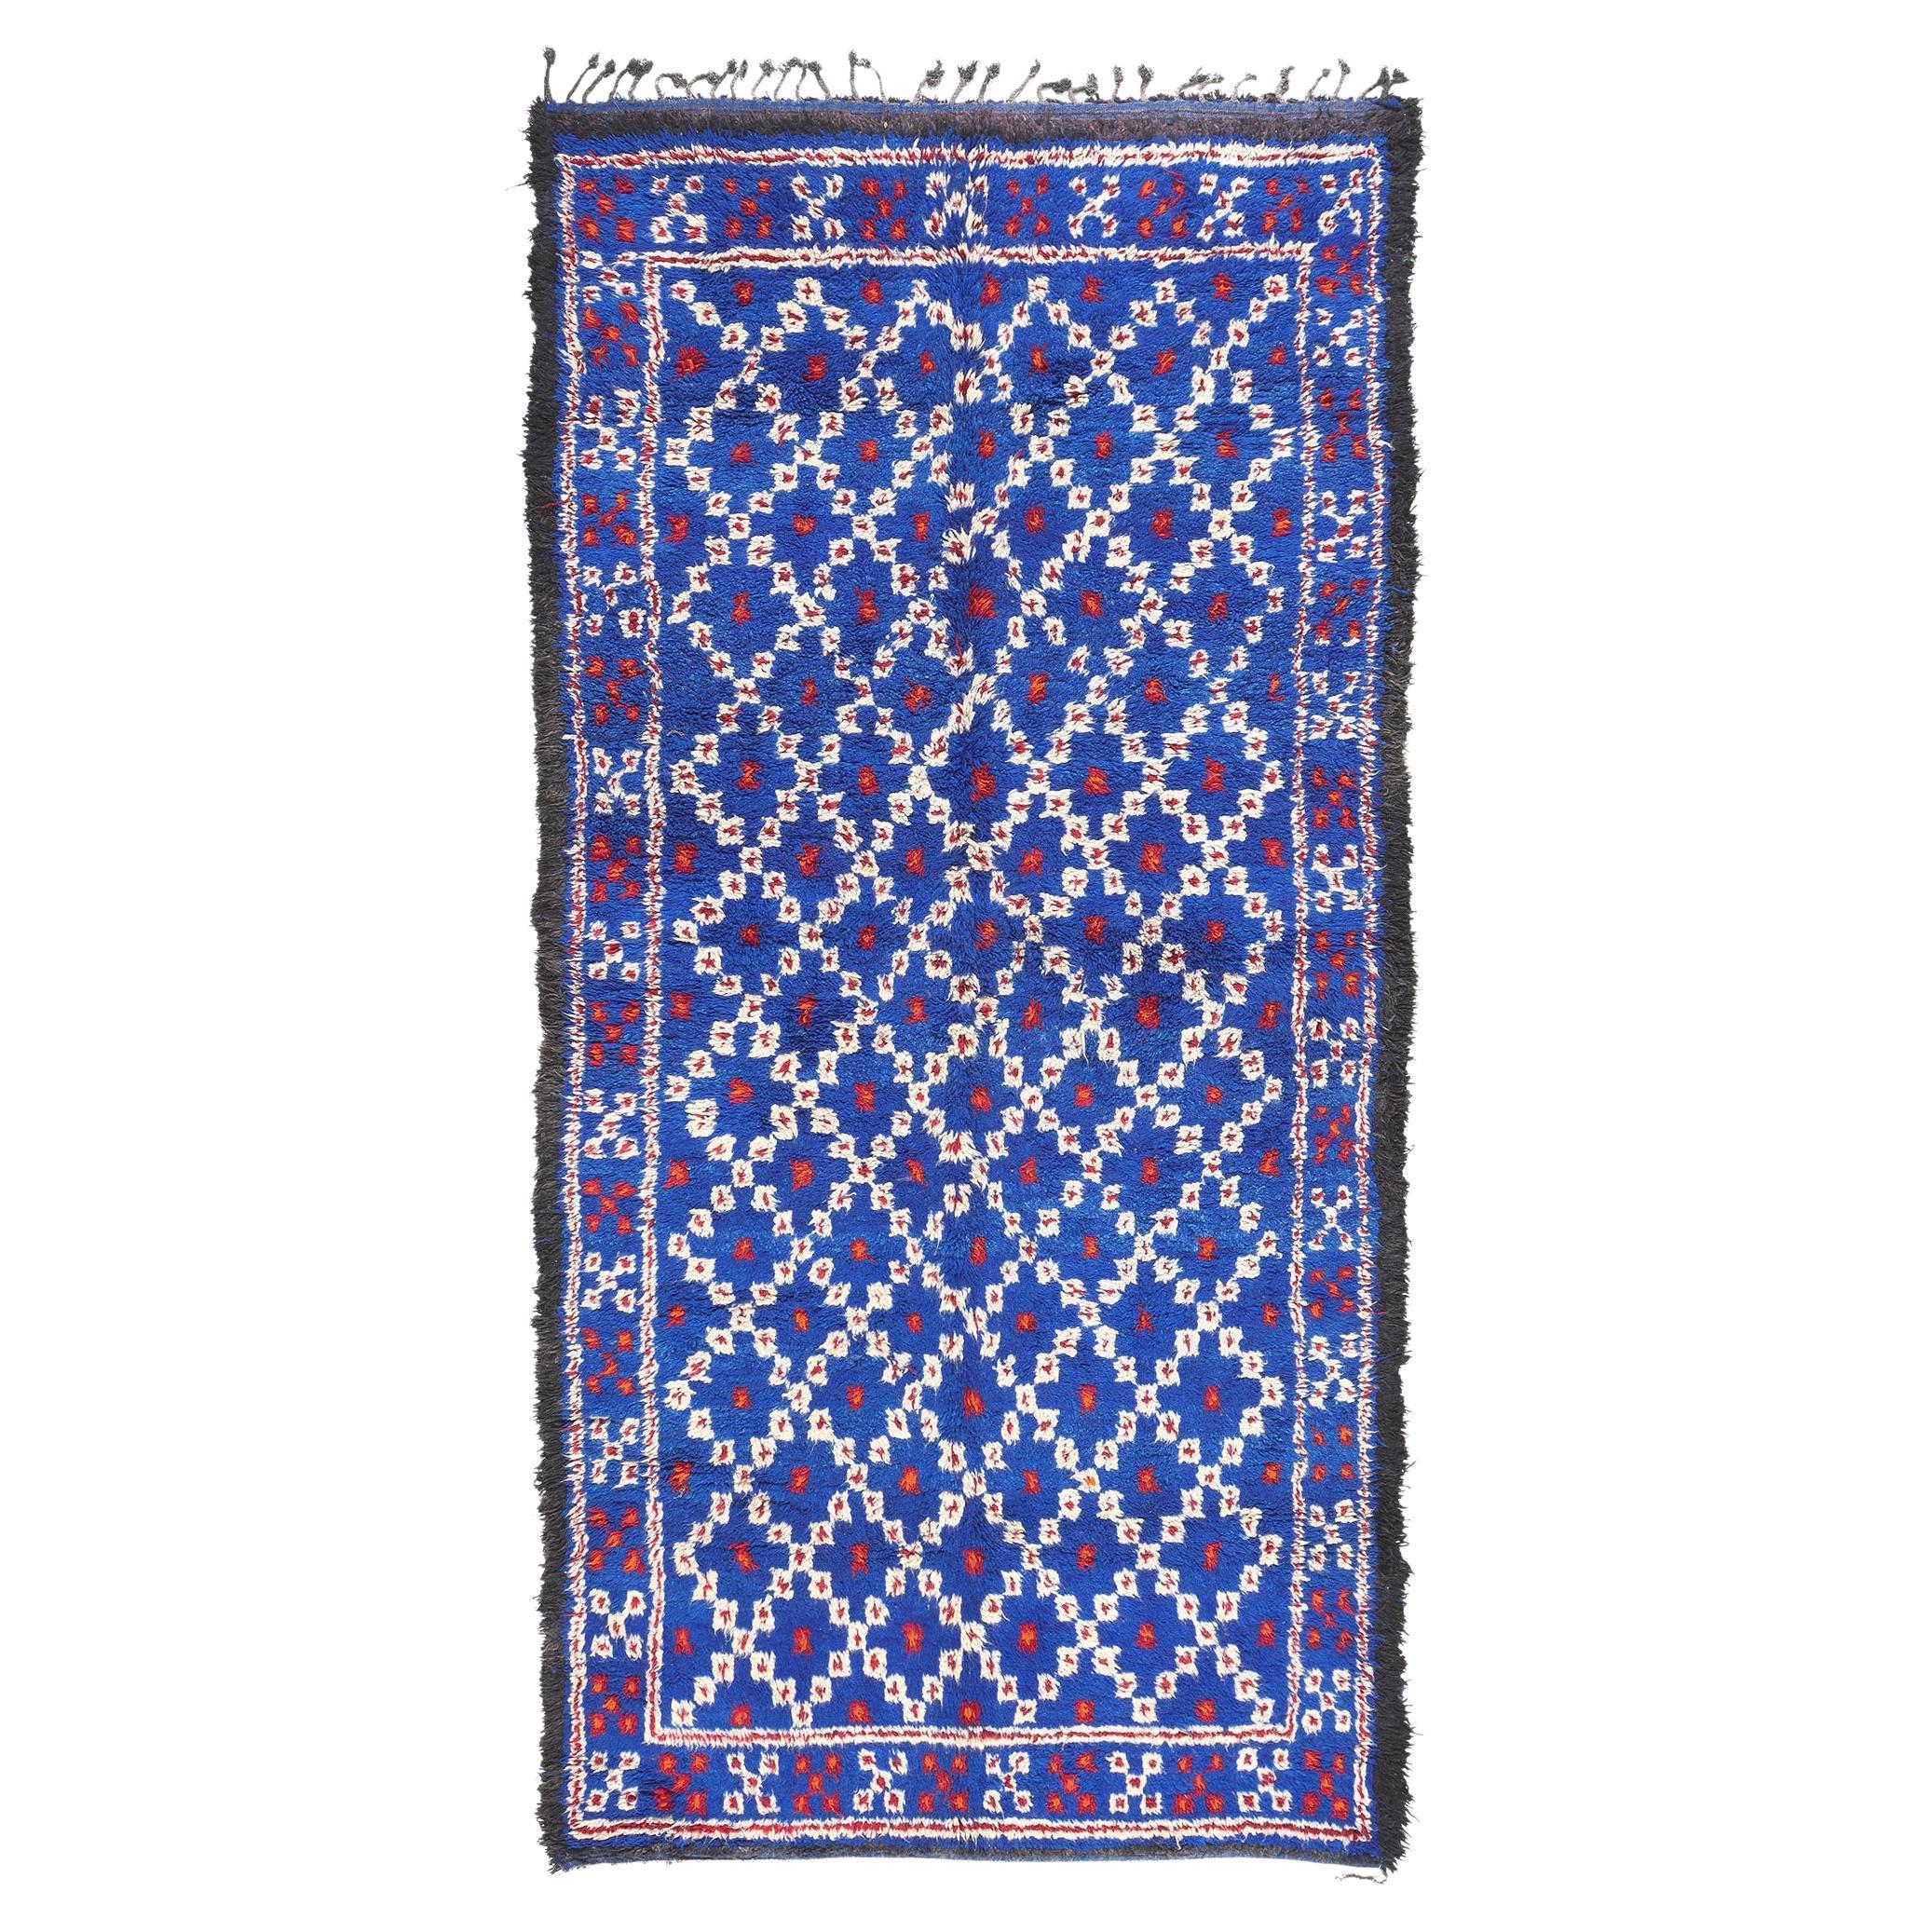 Vintage Blue Beni MGuild Moroccan Rug For Sale